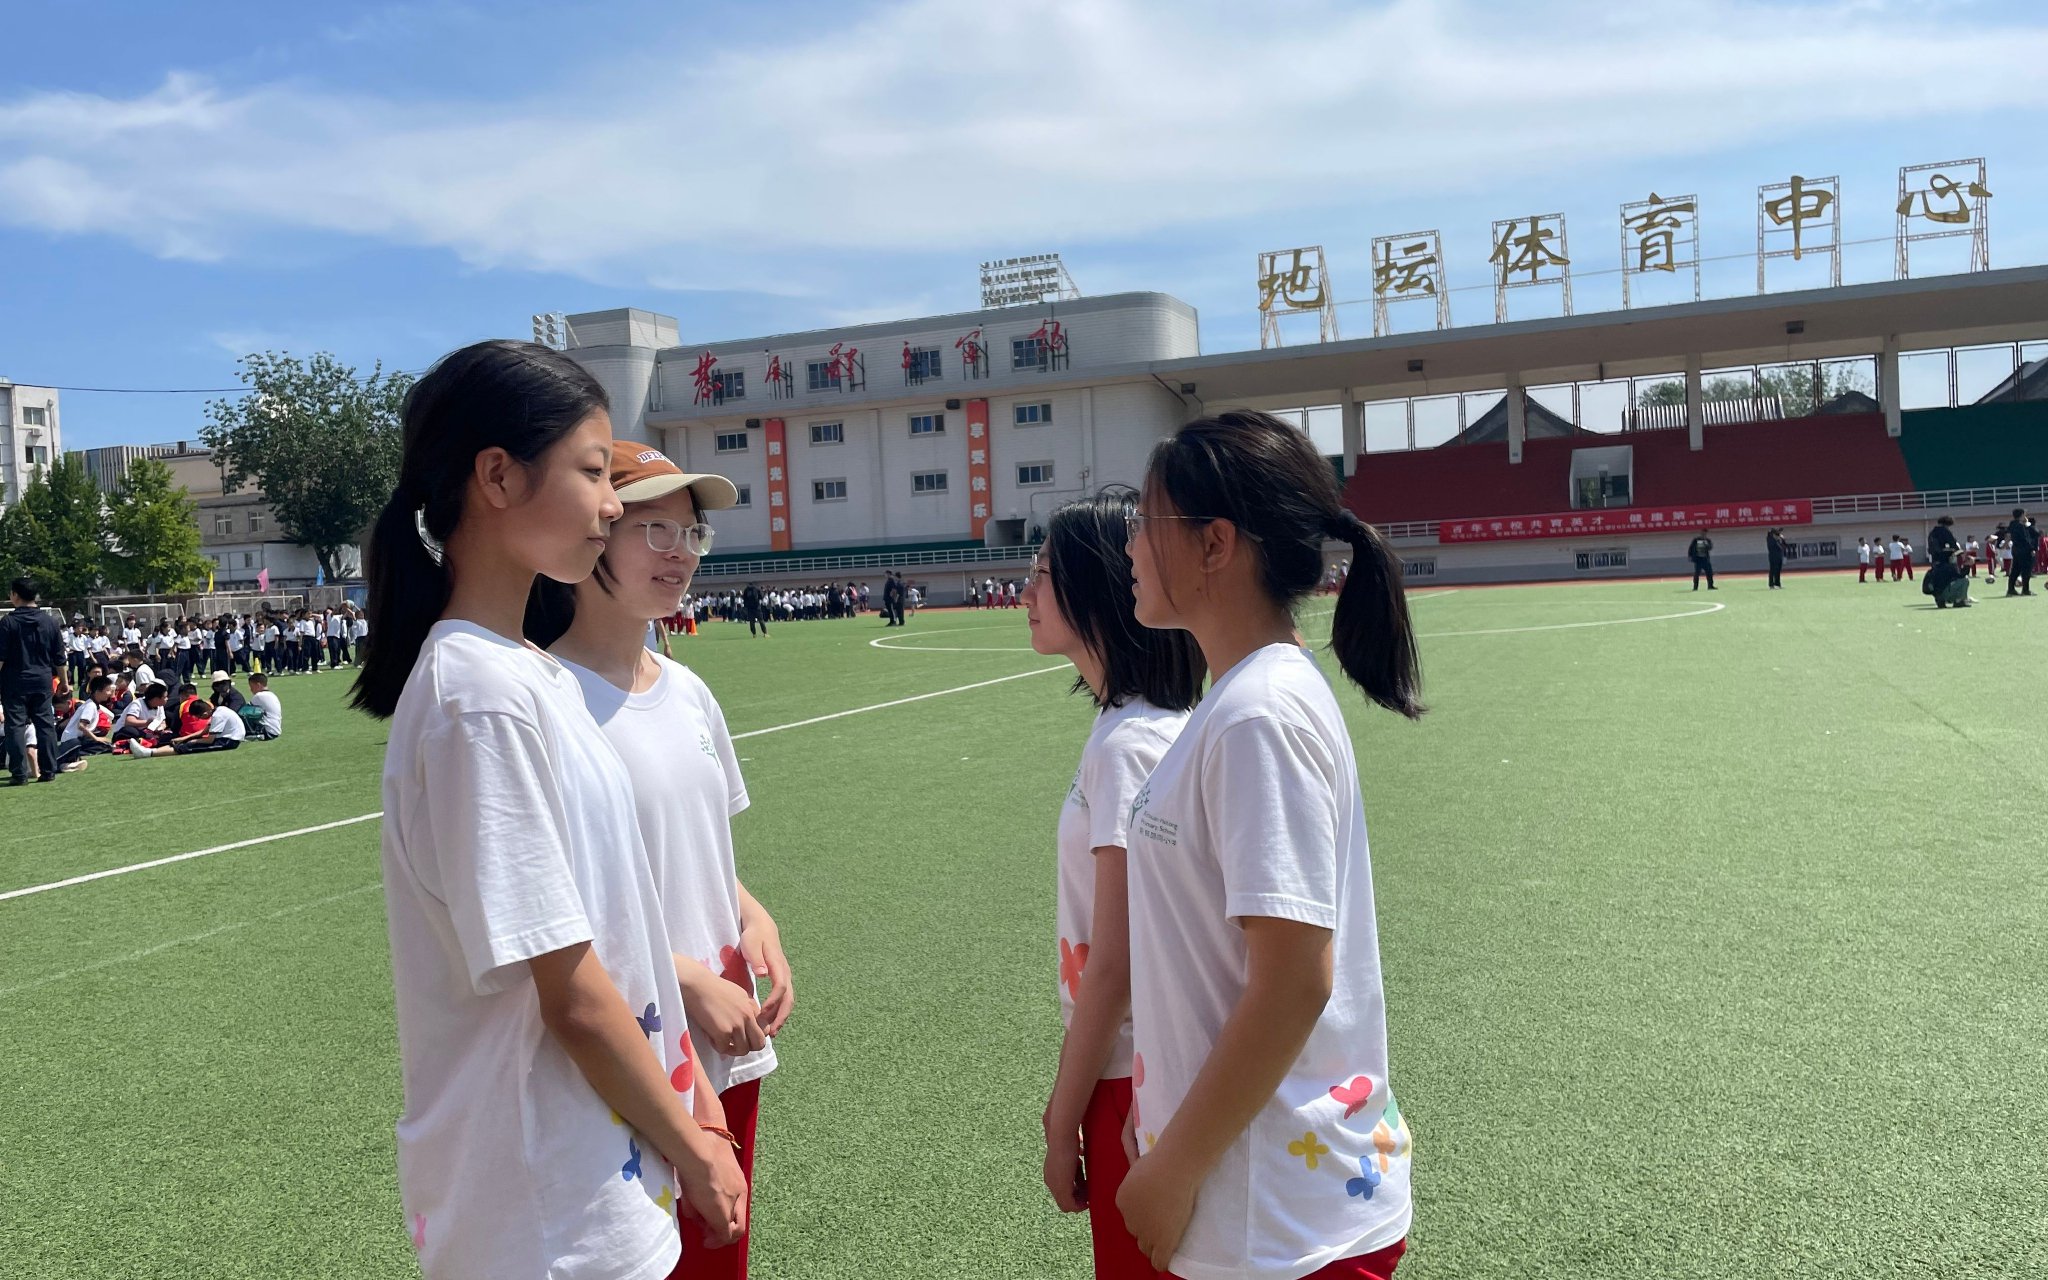 新鮮胡同小學的新京報小記者採訪彩旗方陣的表演者。新京報記者徐彥琳 攝